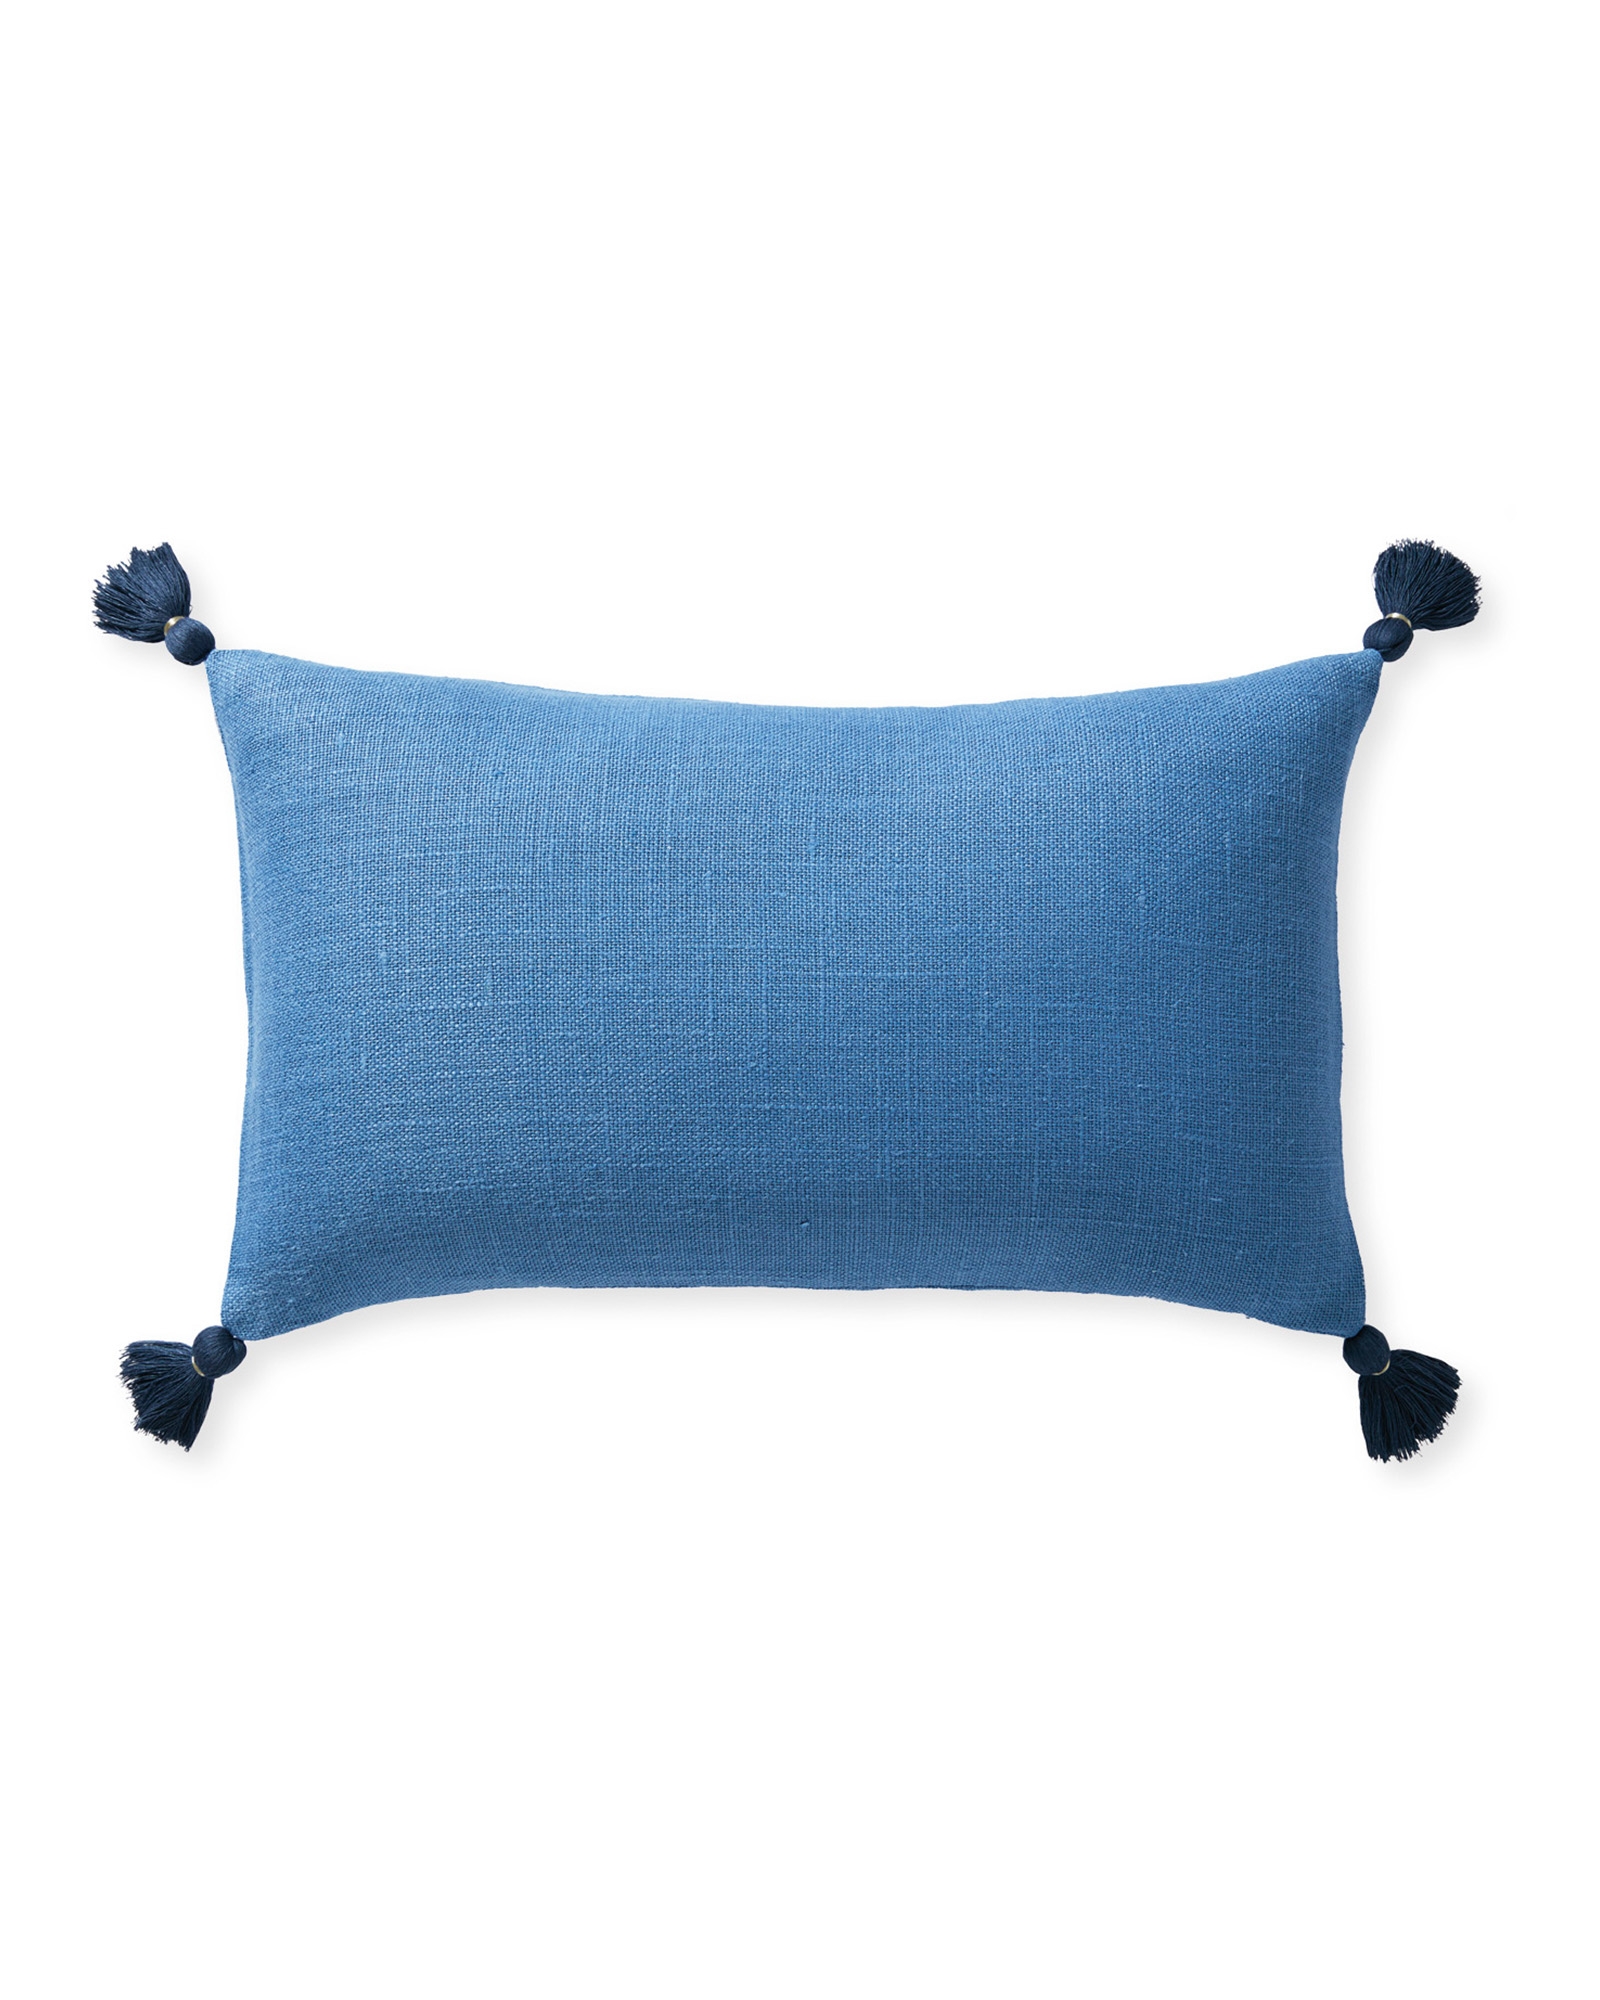 Eva Tassel 12" x 21" Pillow Cover - Harbor - Insert sold separately - Image 0